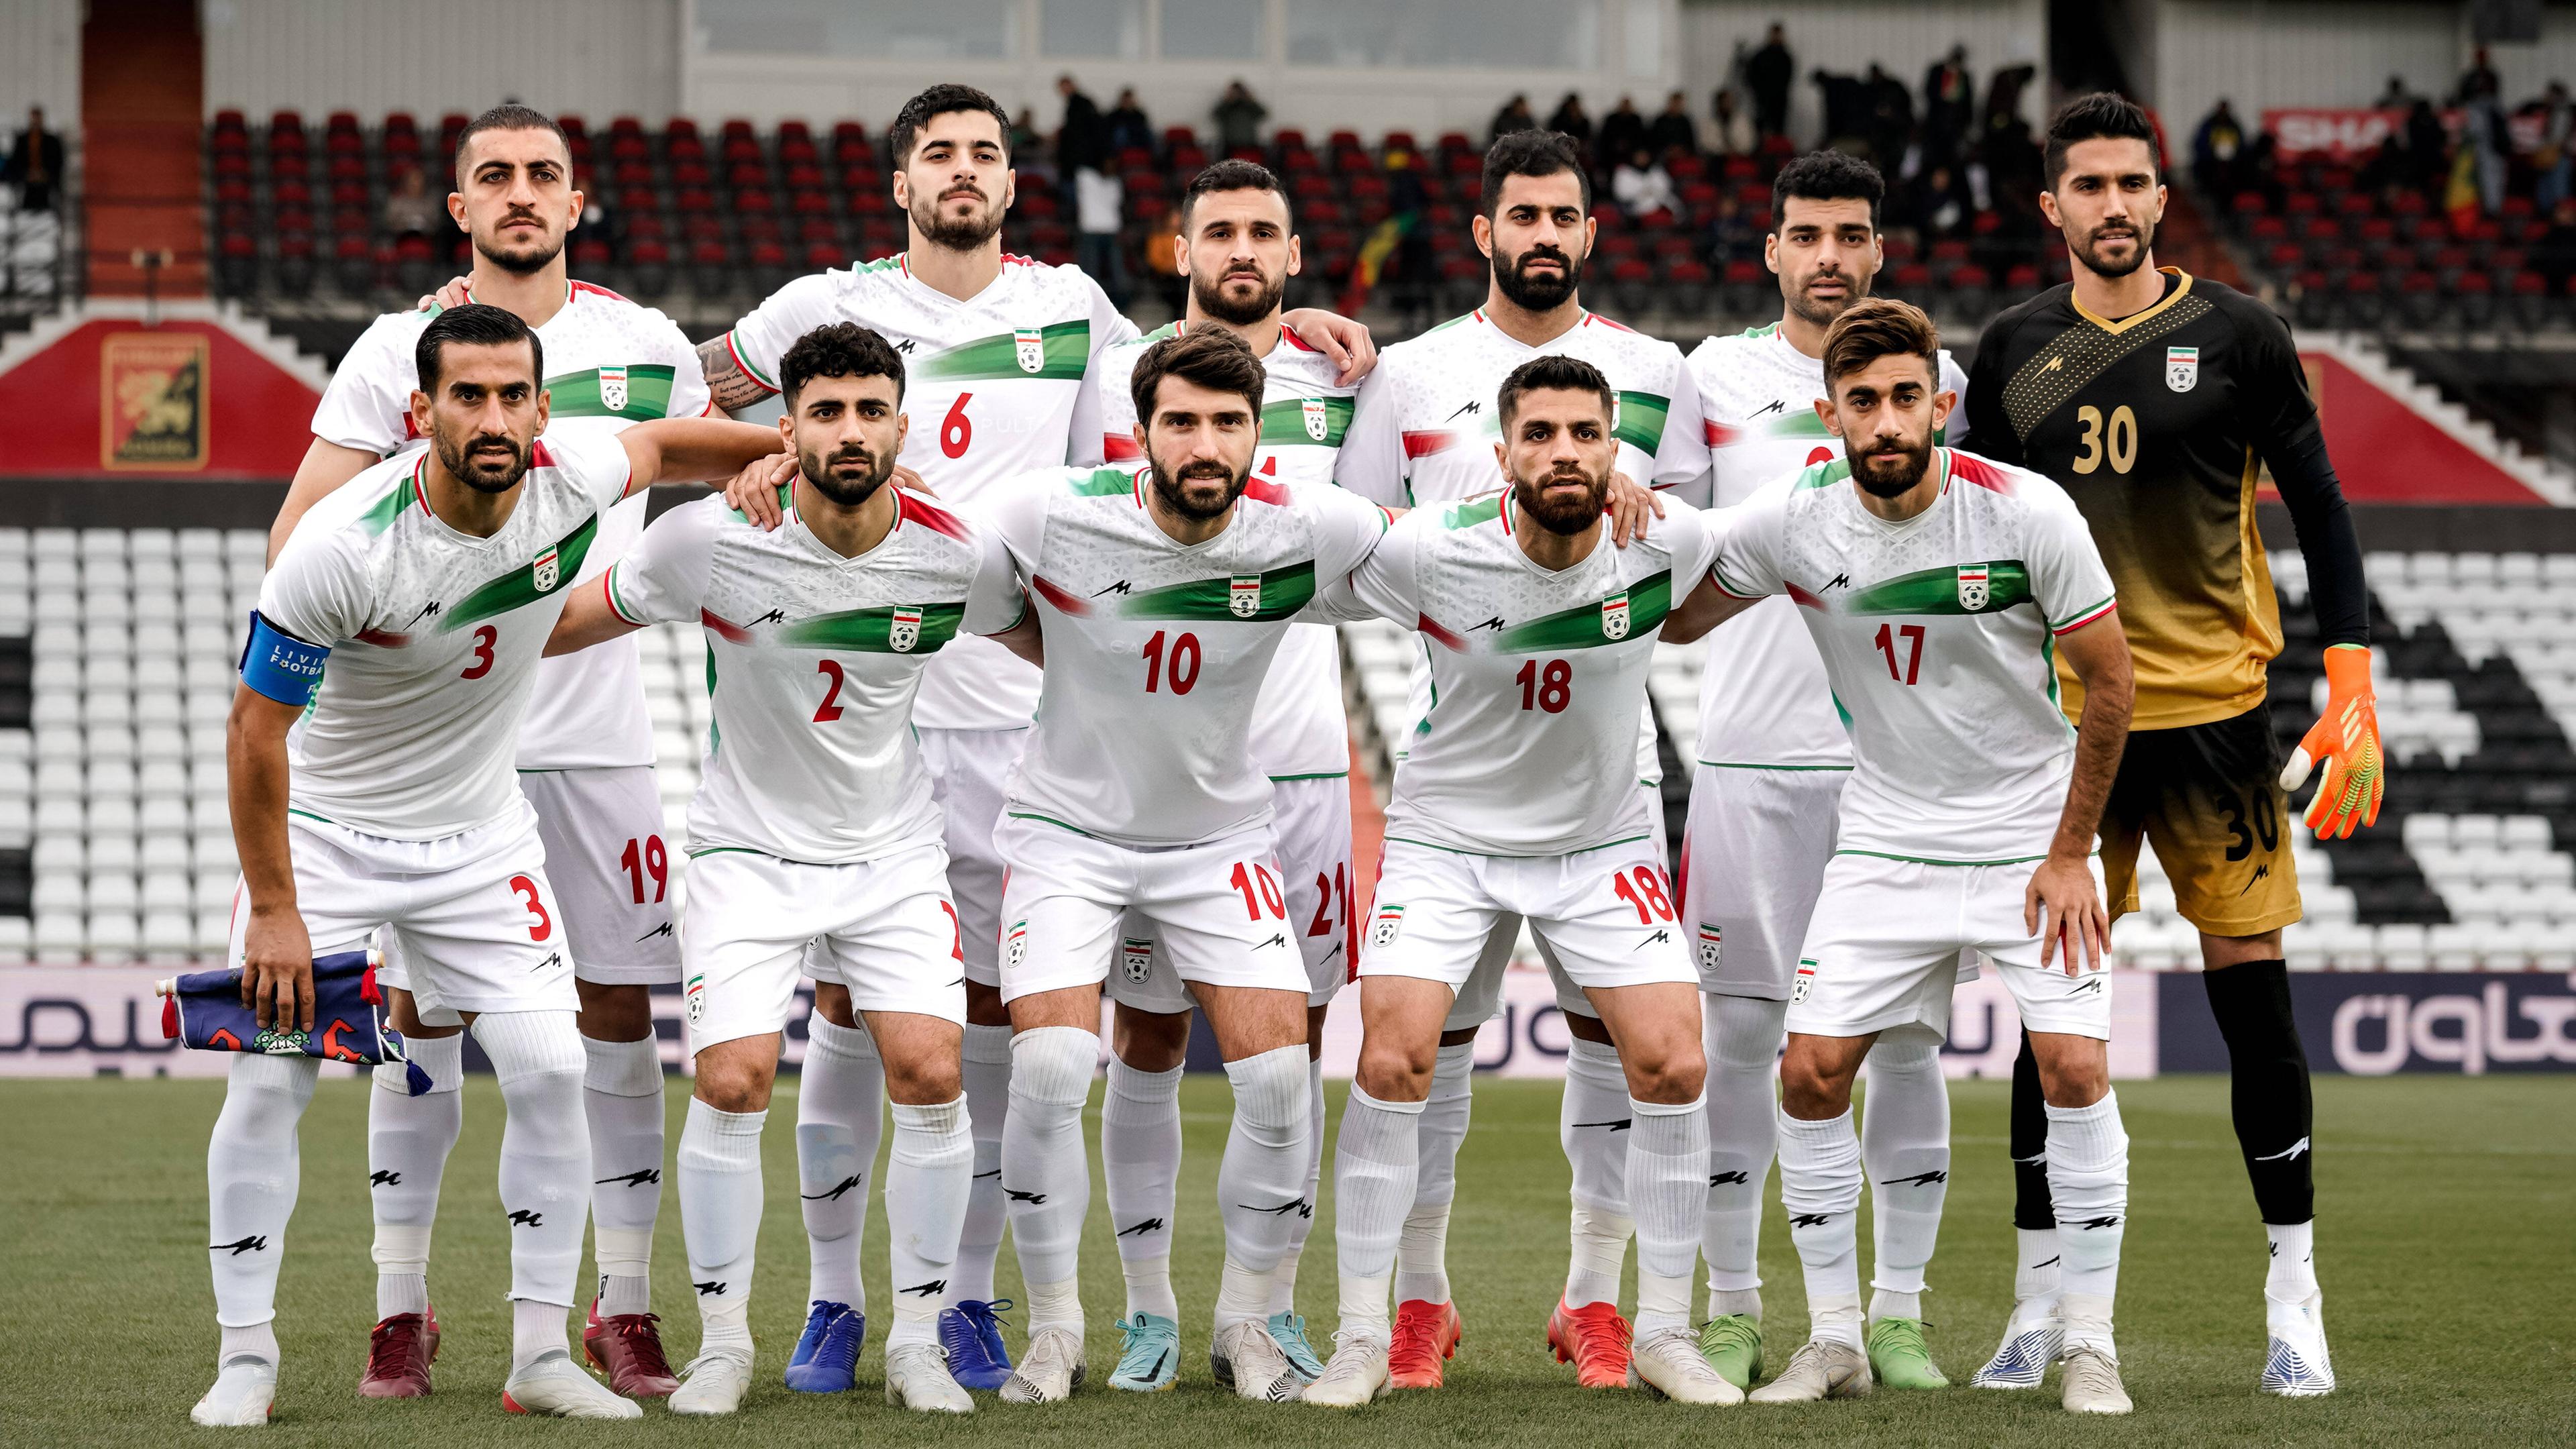 WM 2022 Irans Nationalelf im Zeichen des Protests